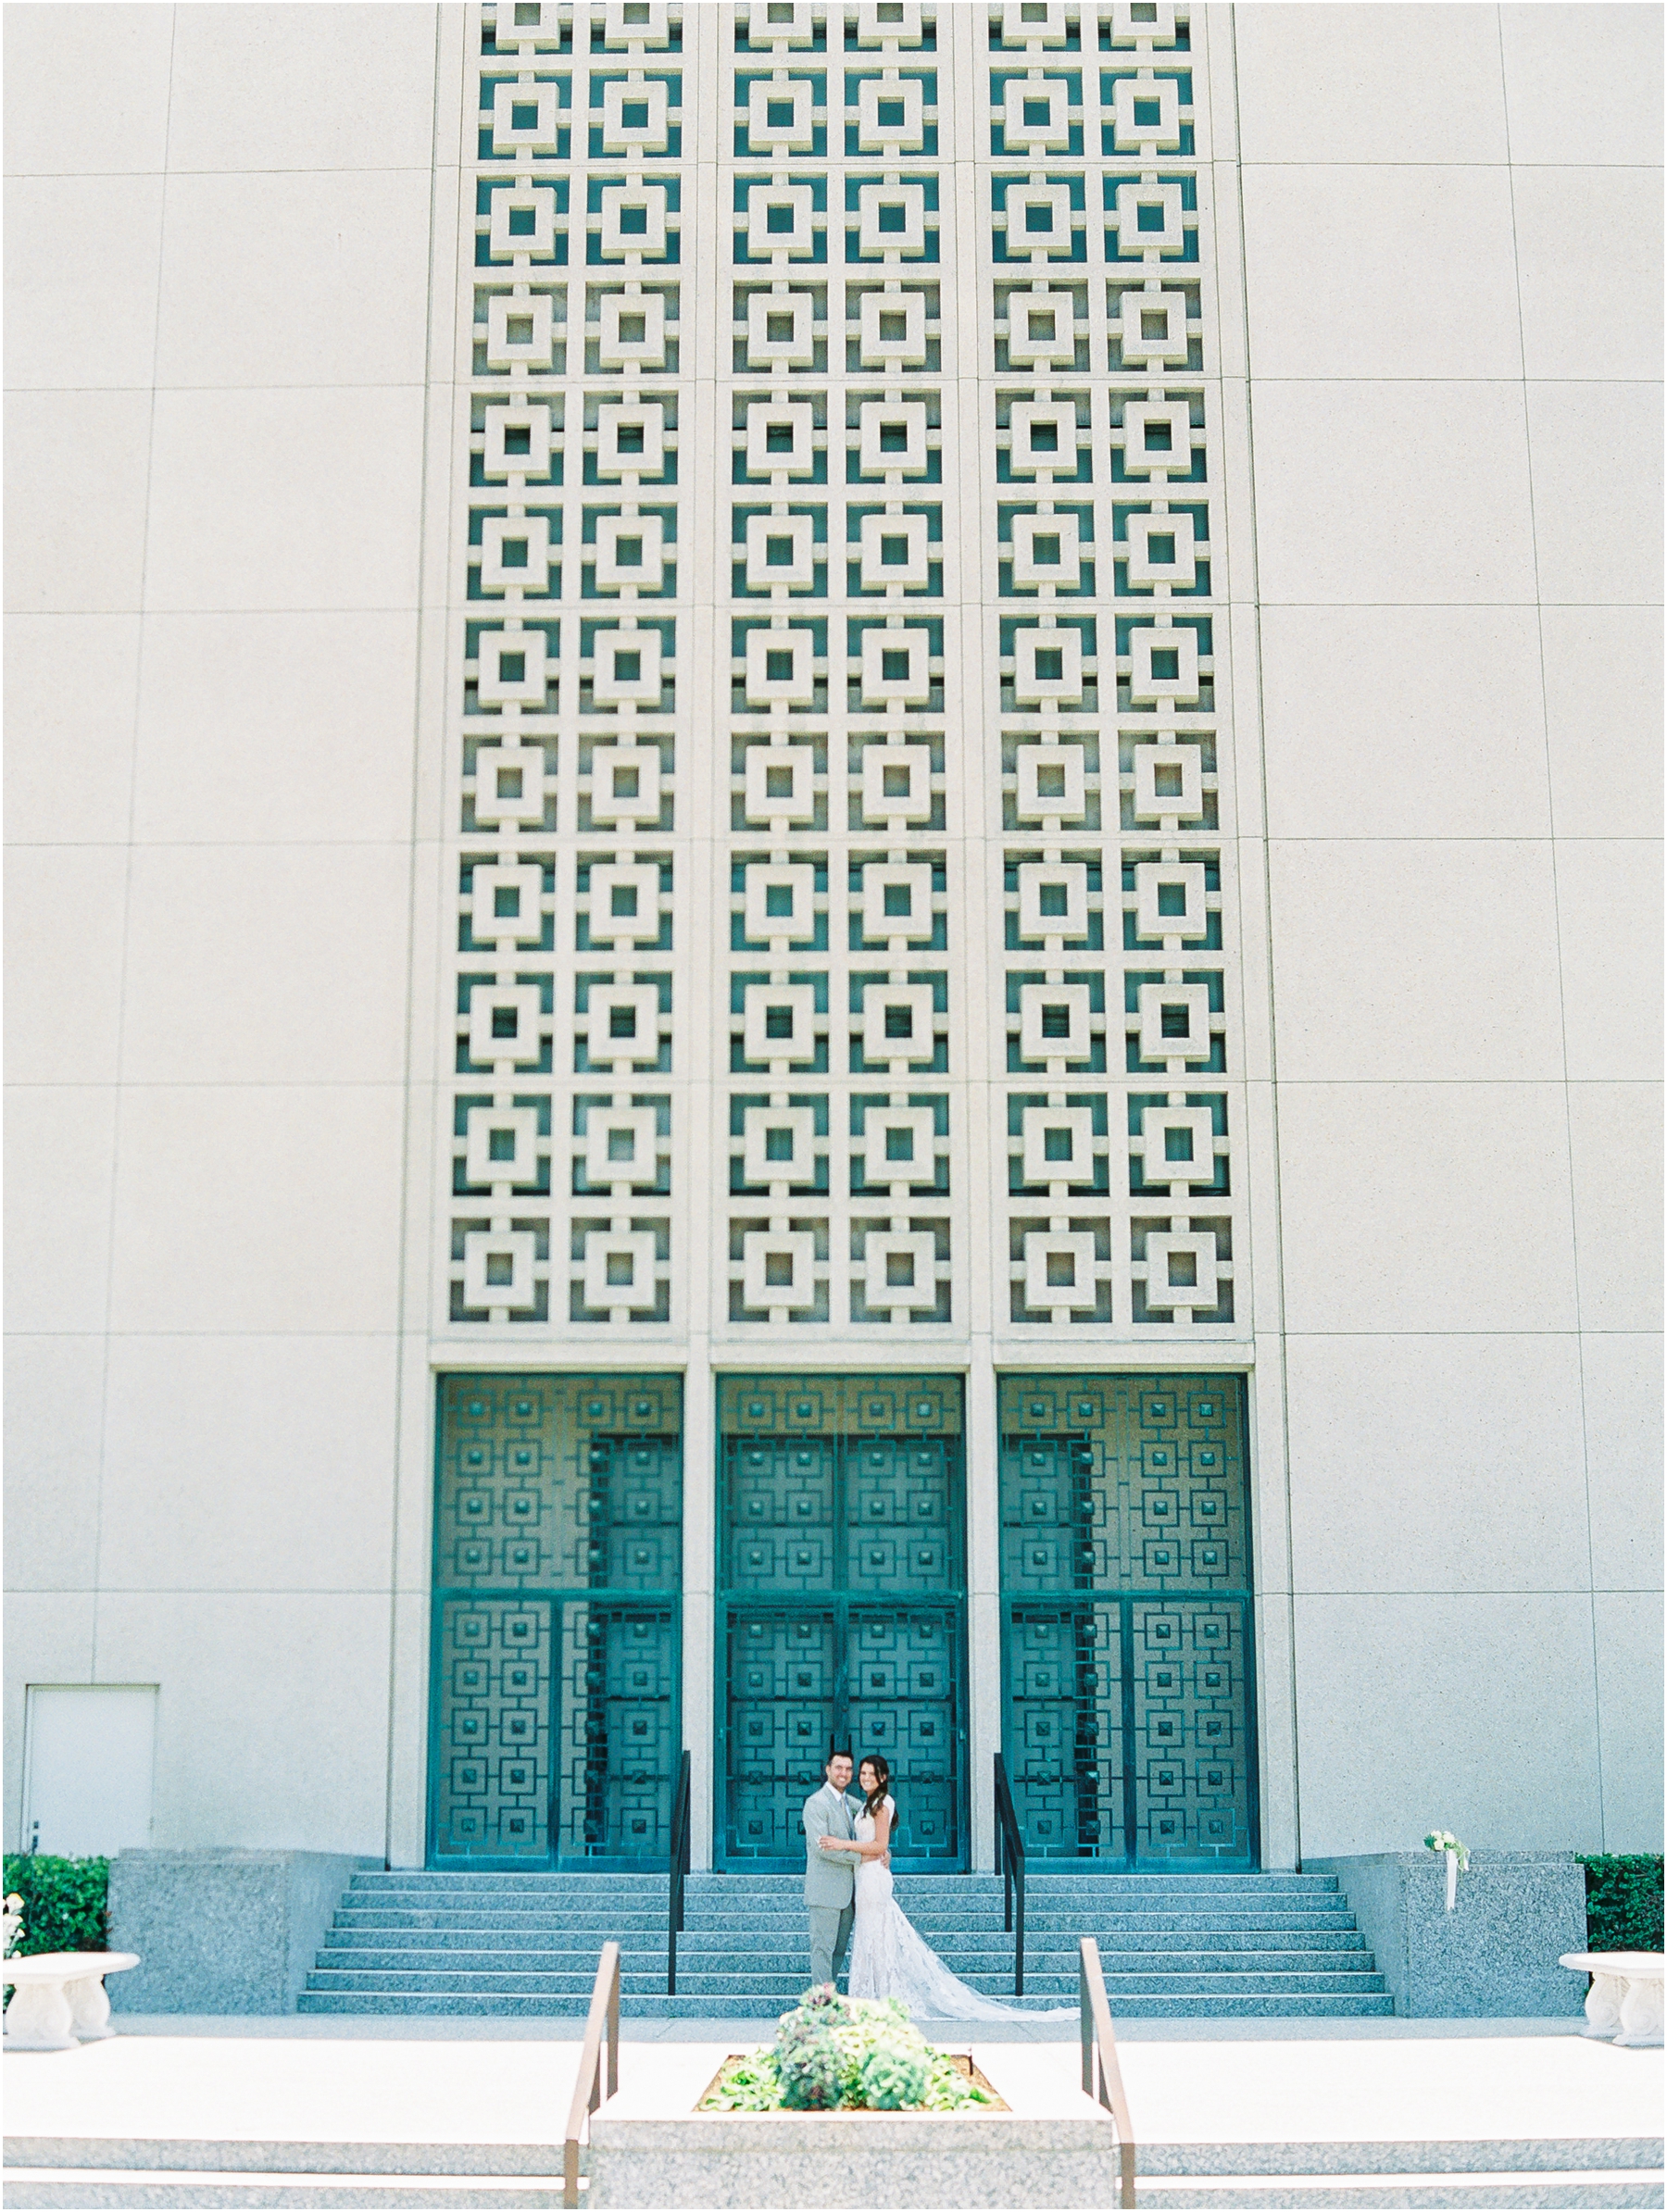 Santa Barbara Wedding Photography - Los Angeles Temple Wedding